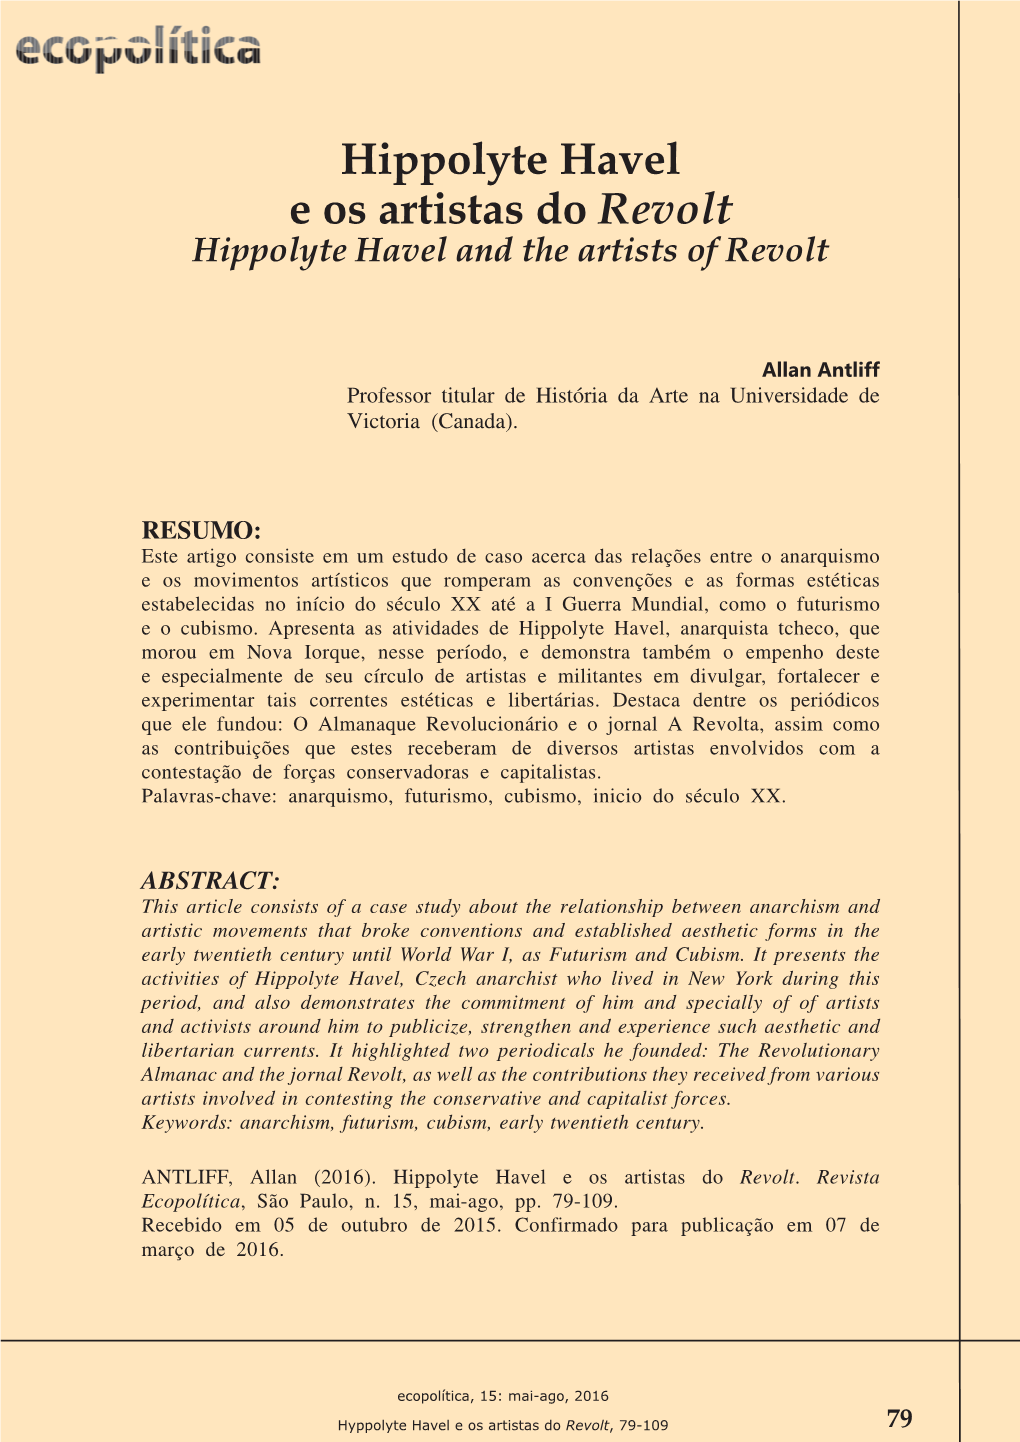 Hippolyte Havel E Os Artistas Do Revolt Hippolyte Havel and the Artists of Revolt